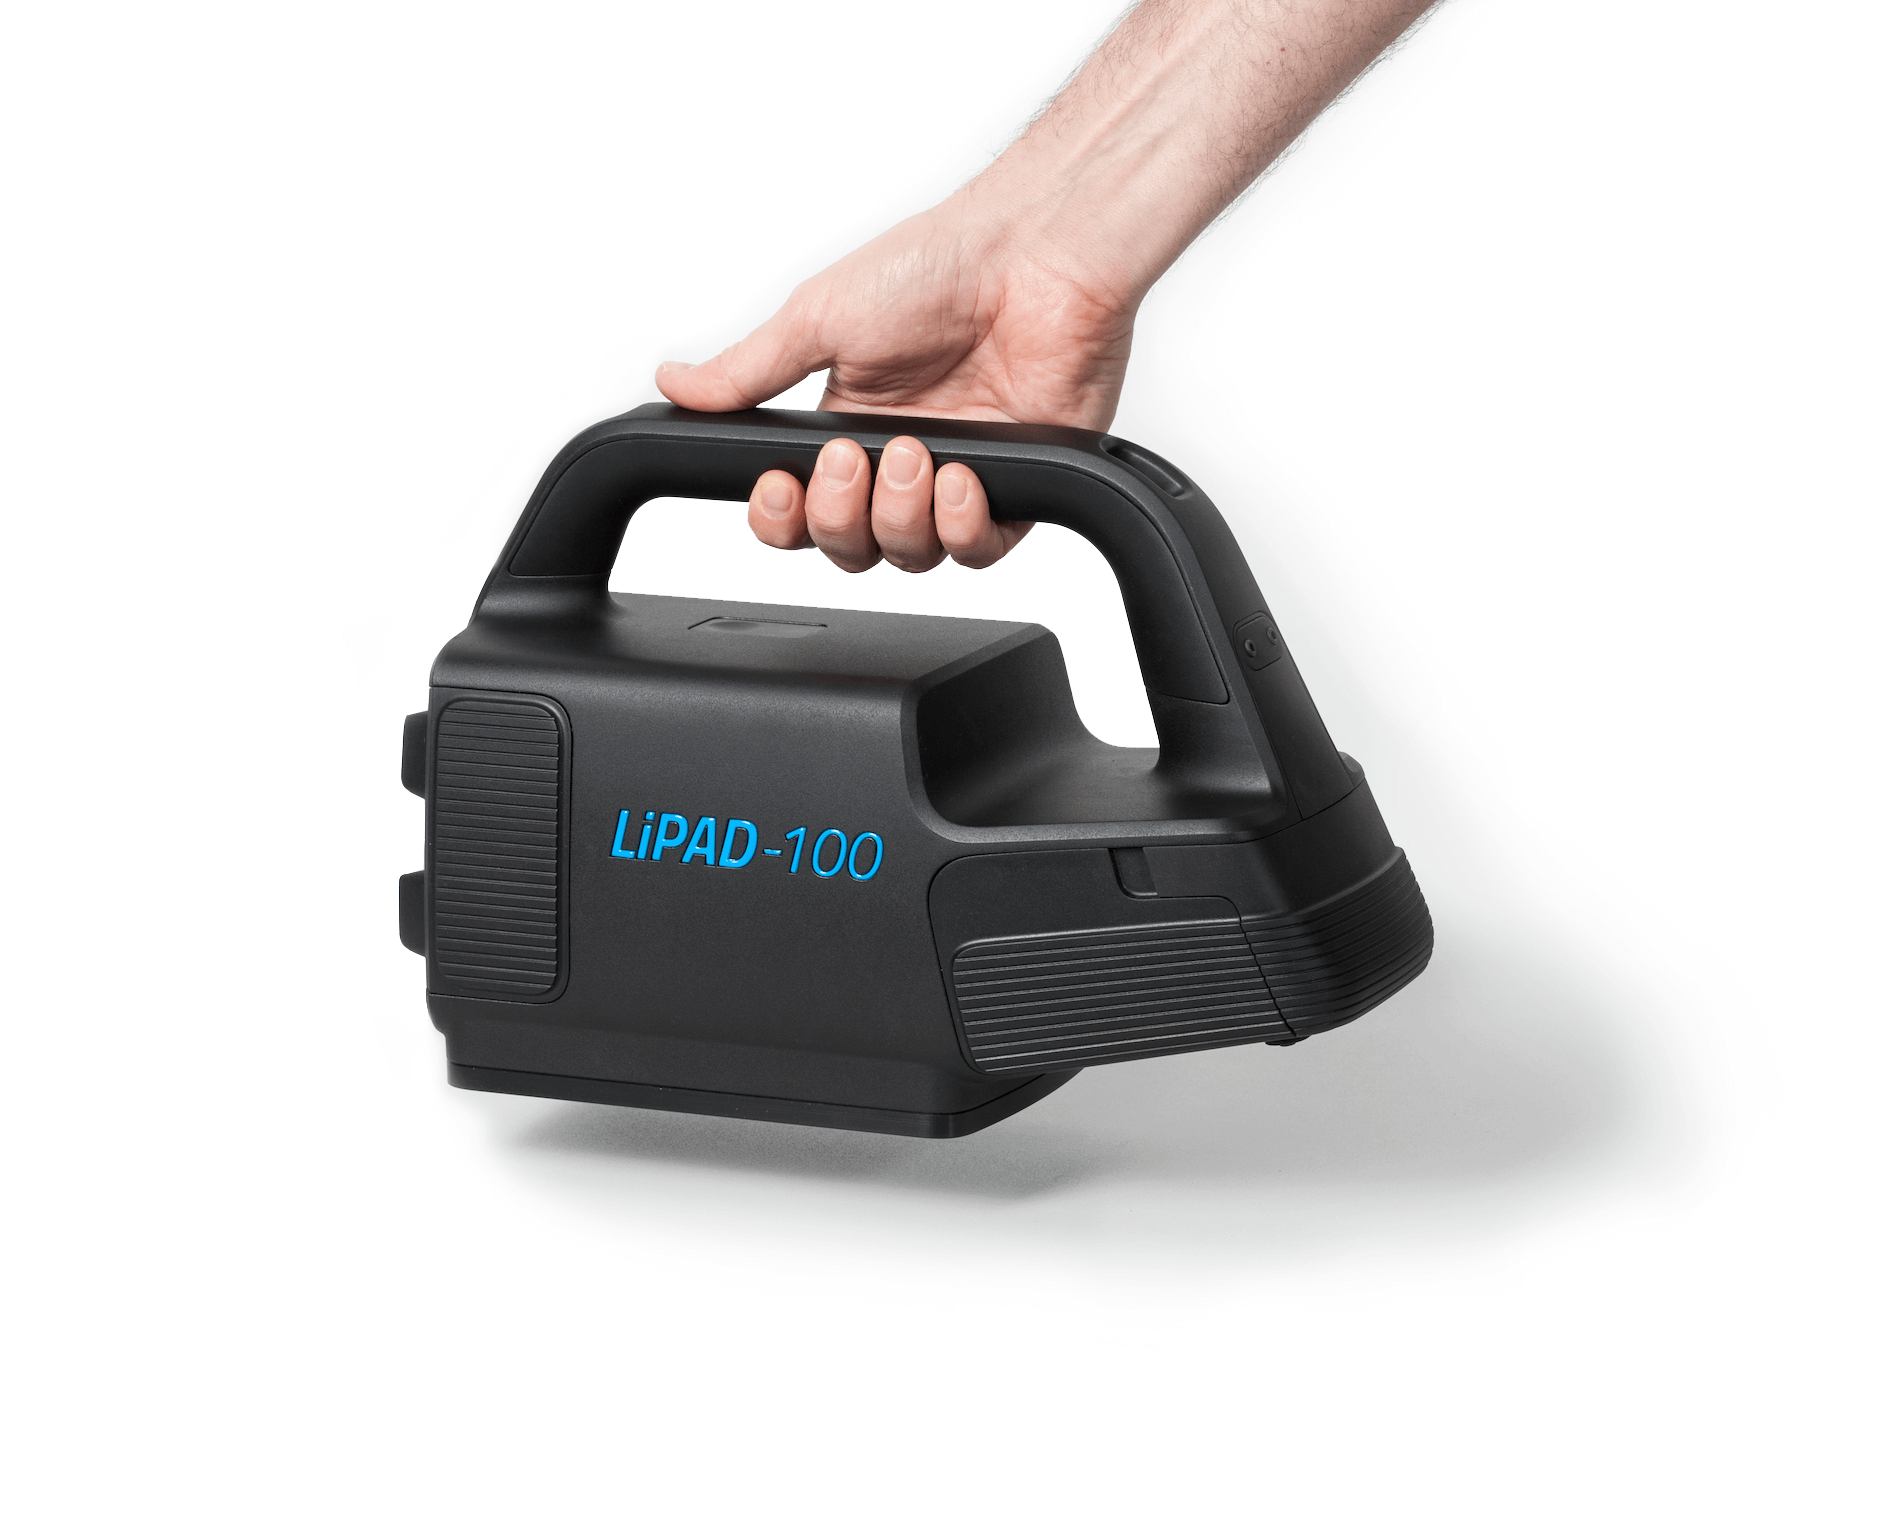 Das Messgerät LiPAD®-100 von LITEF wird von einer Hand, von oben, ins Bild gehalten. Das Gerät ist schwarz und hat einen blauen 'LiPAD®-100'-Schriftzug .